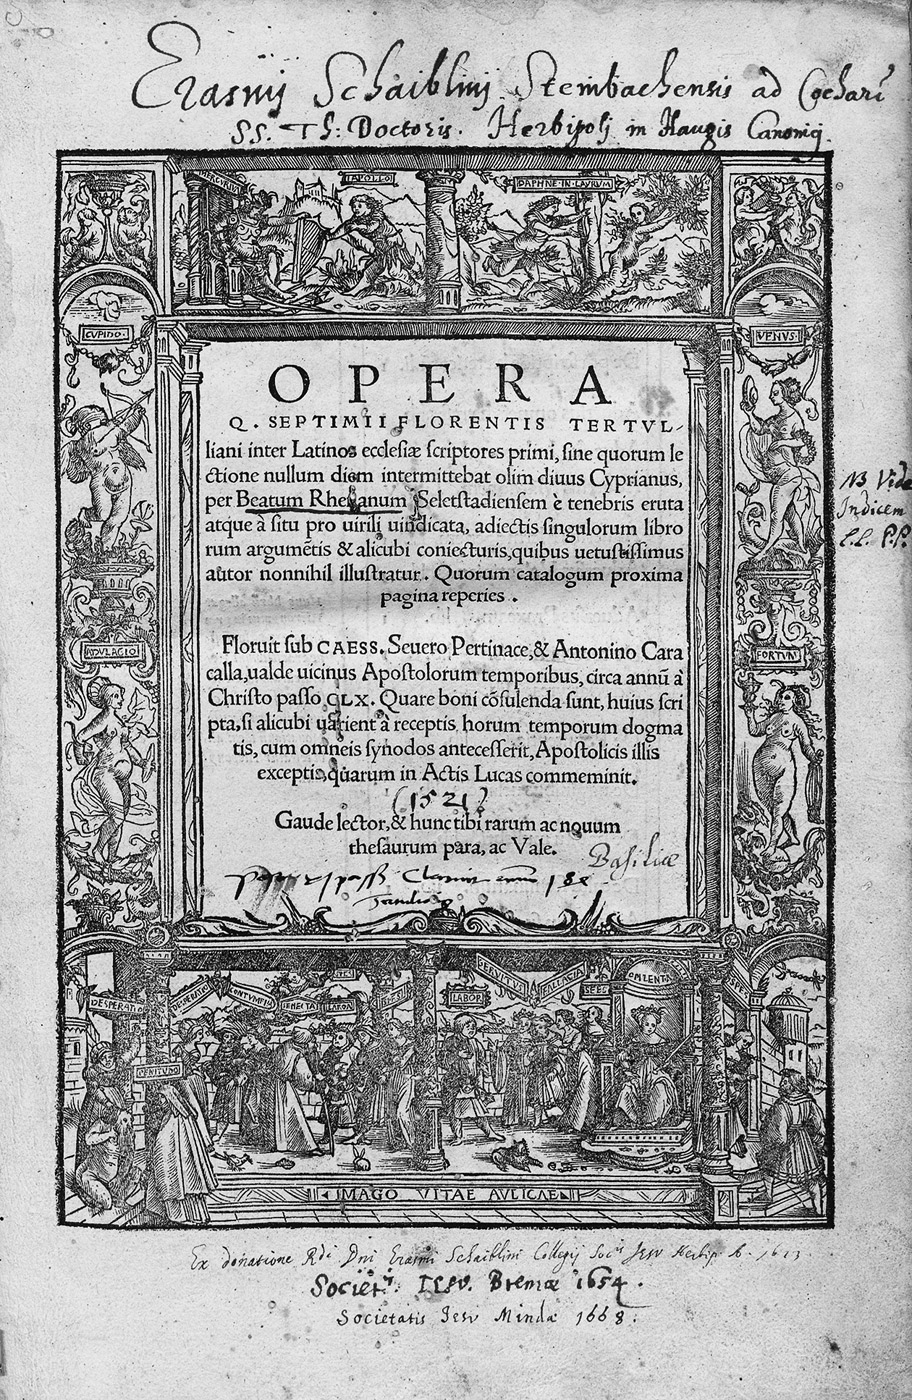 Lot 1193, Auction  115, Tertullian, Quinus Septimius Florens, Opera